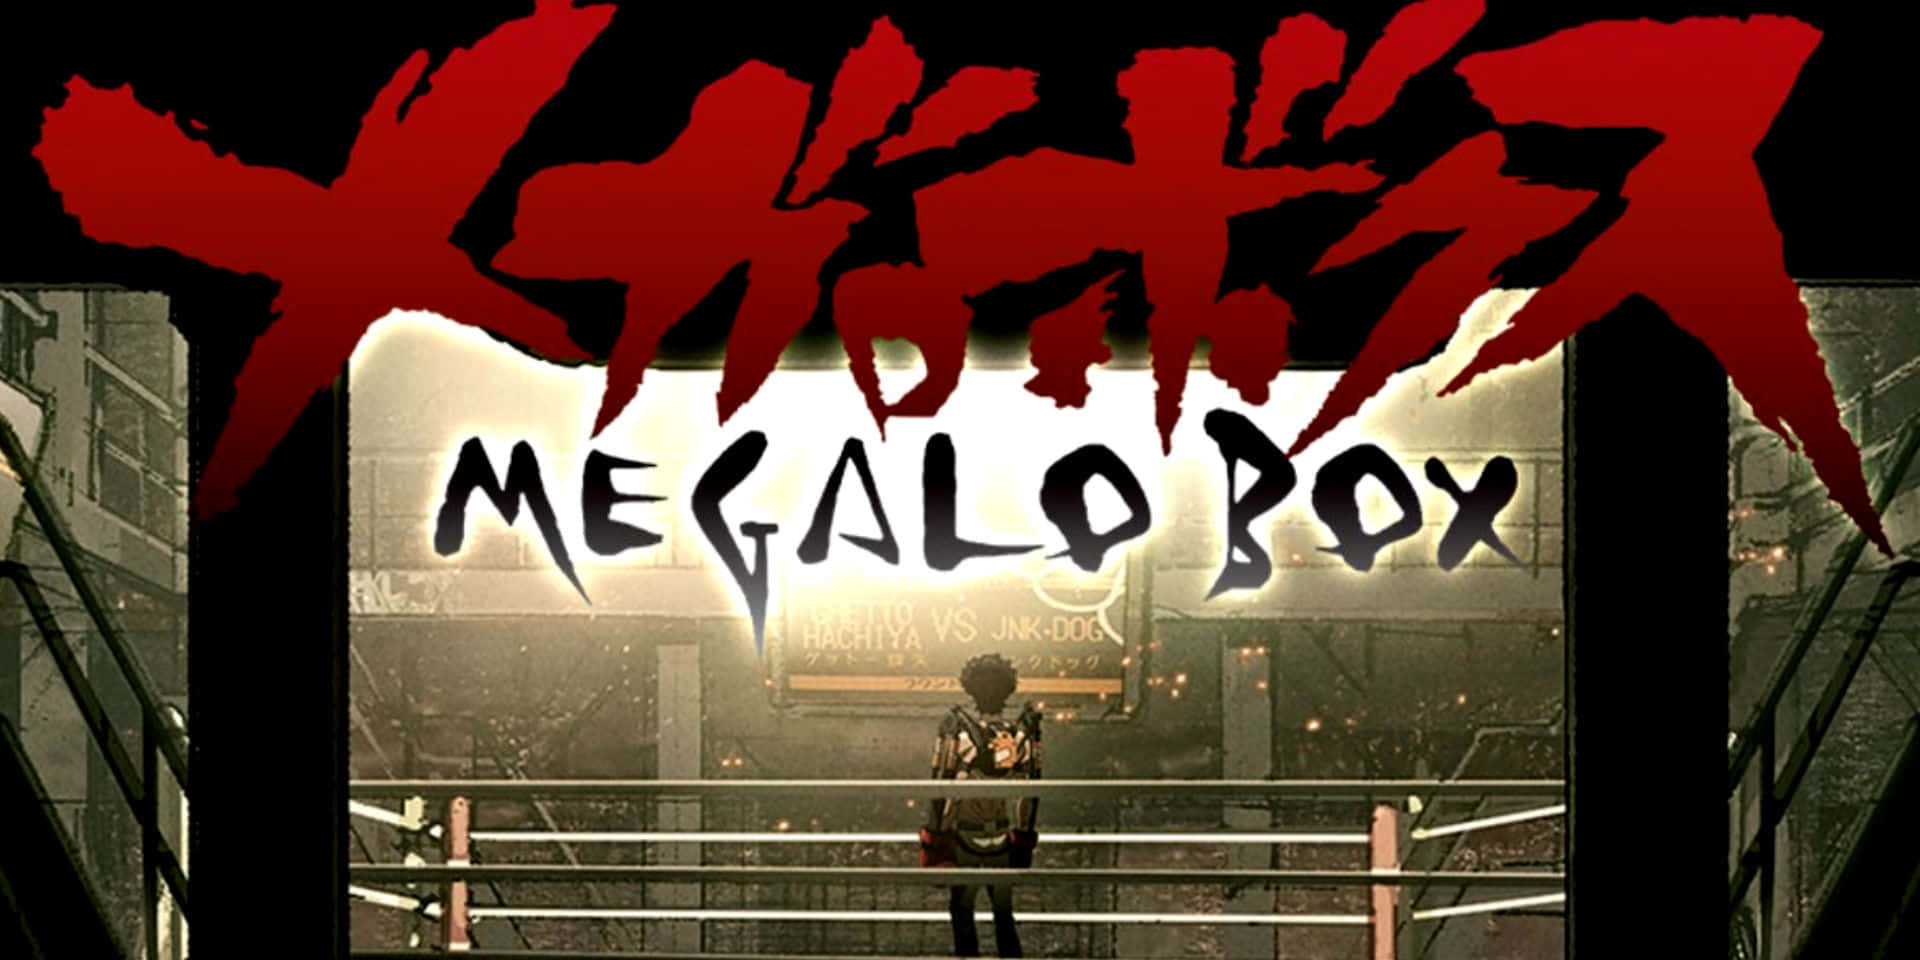 Megalo Box Background